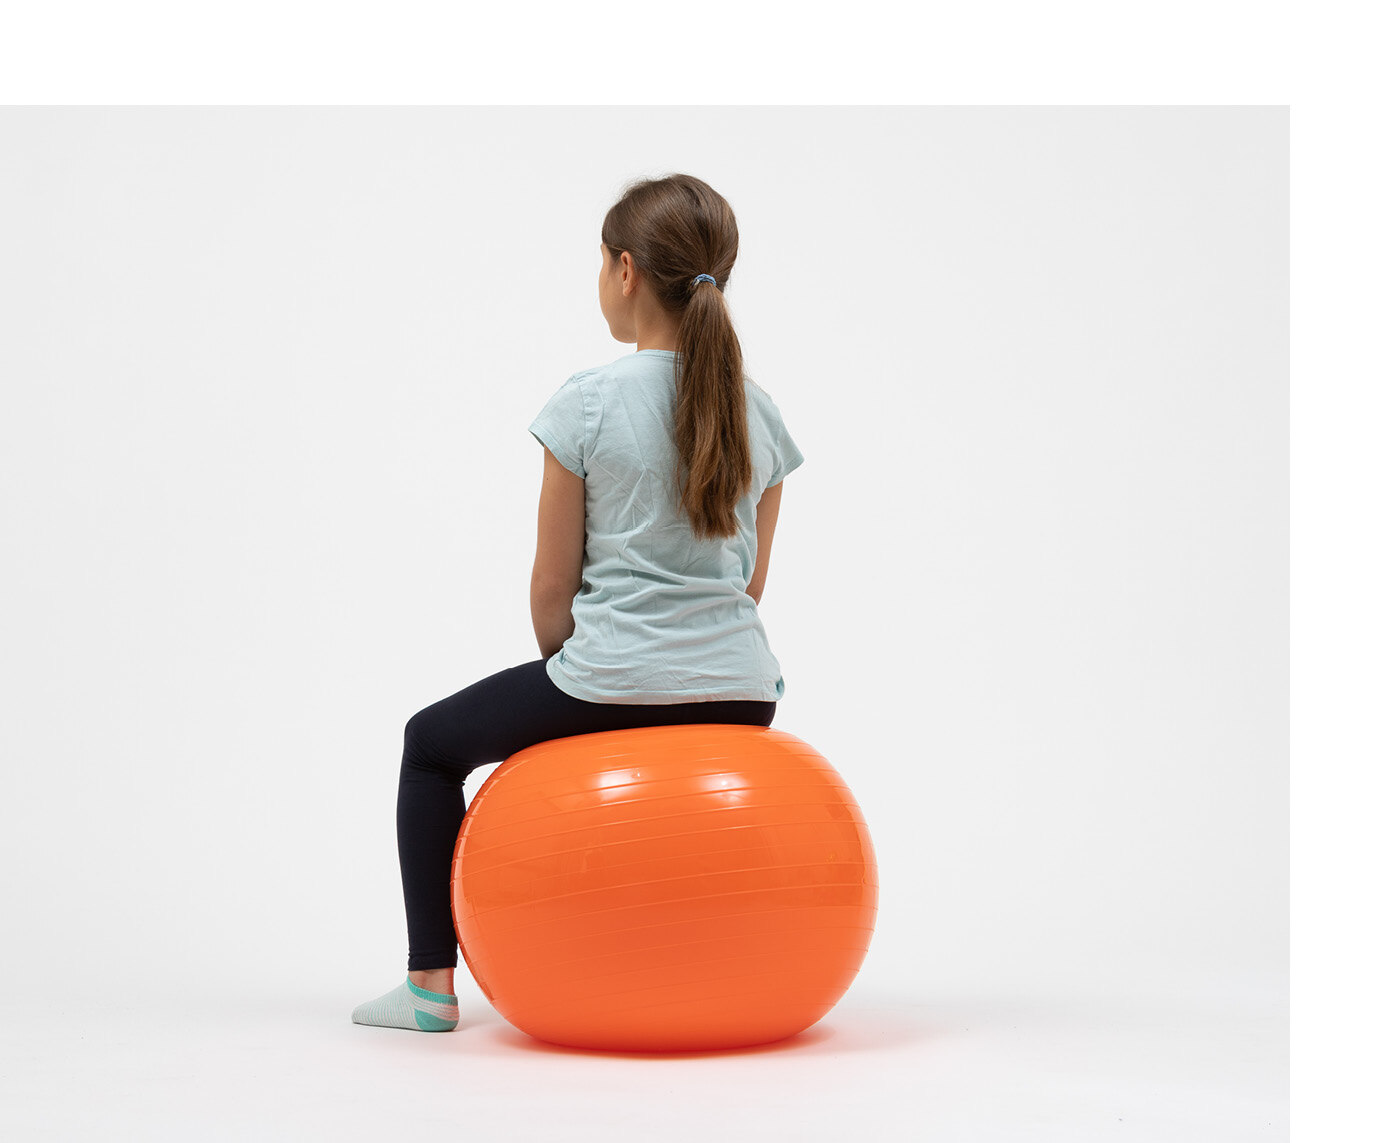 Ein Mädchen sitzt auf einem farbigen, aufgeblasenen Plastikball.